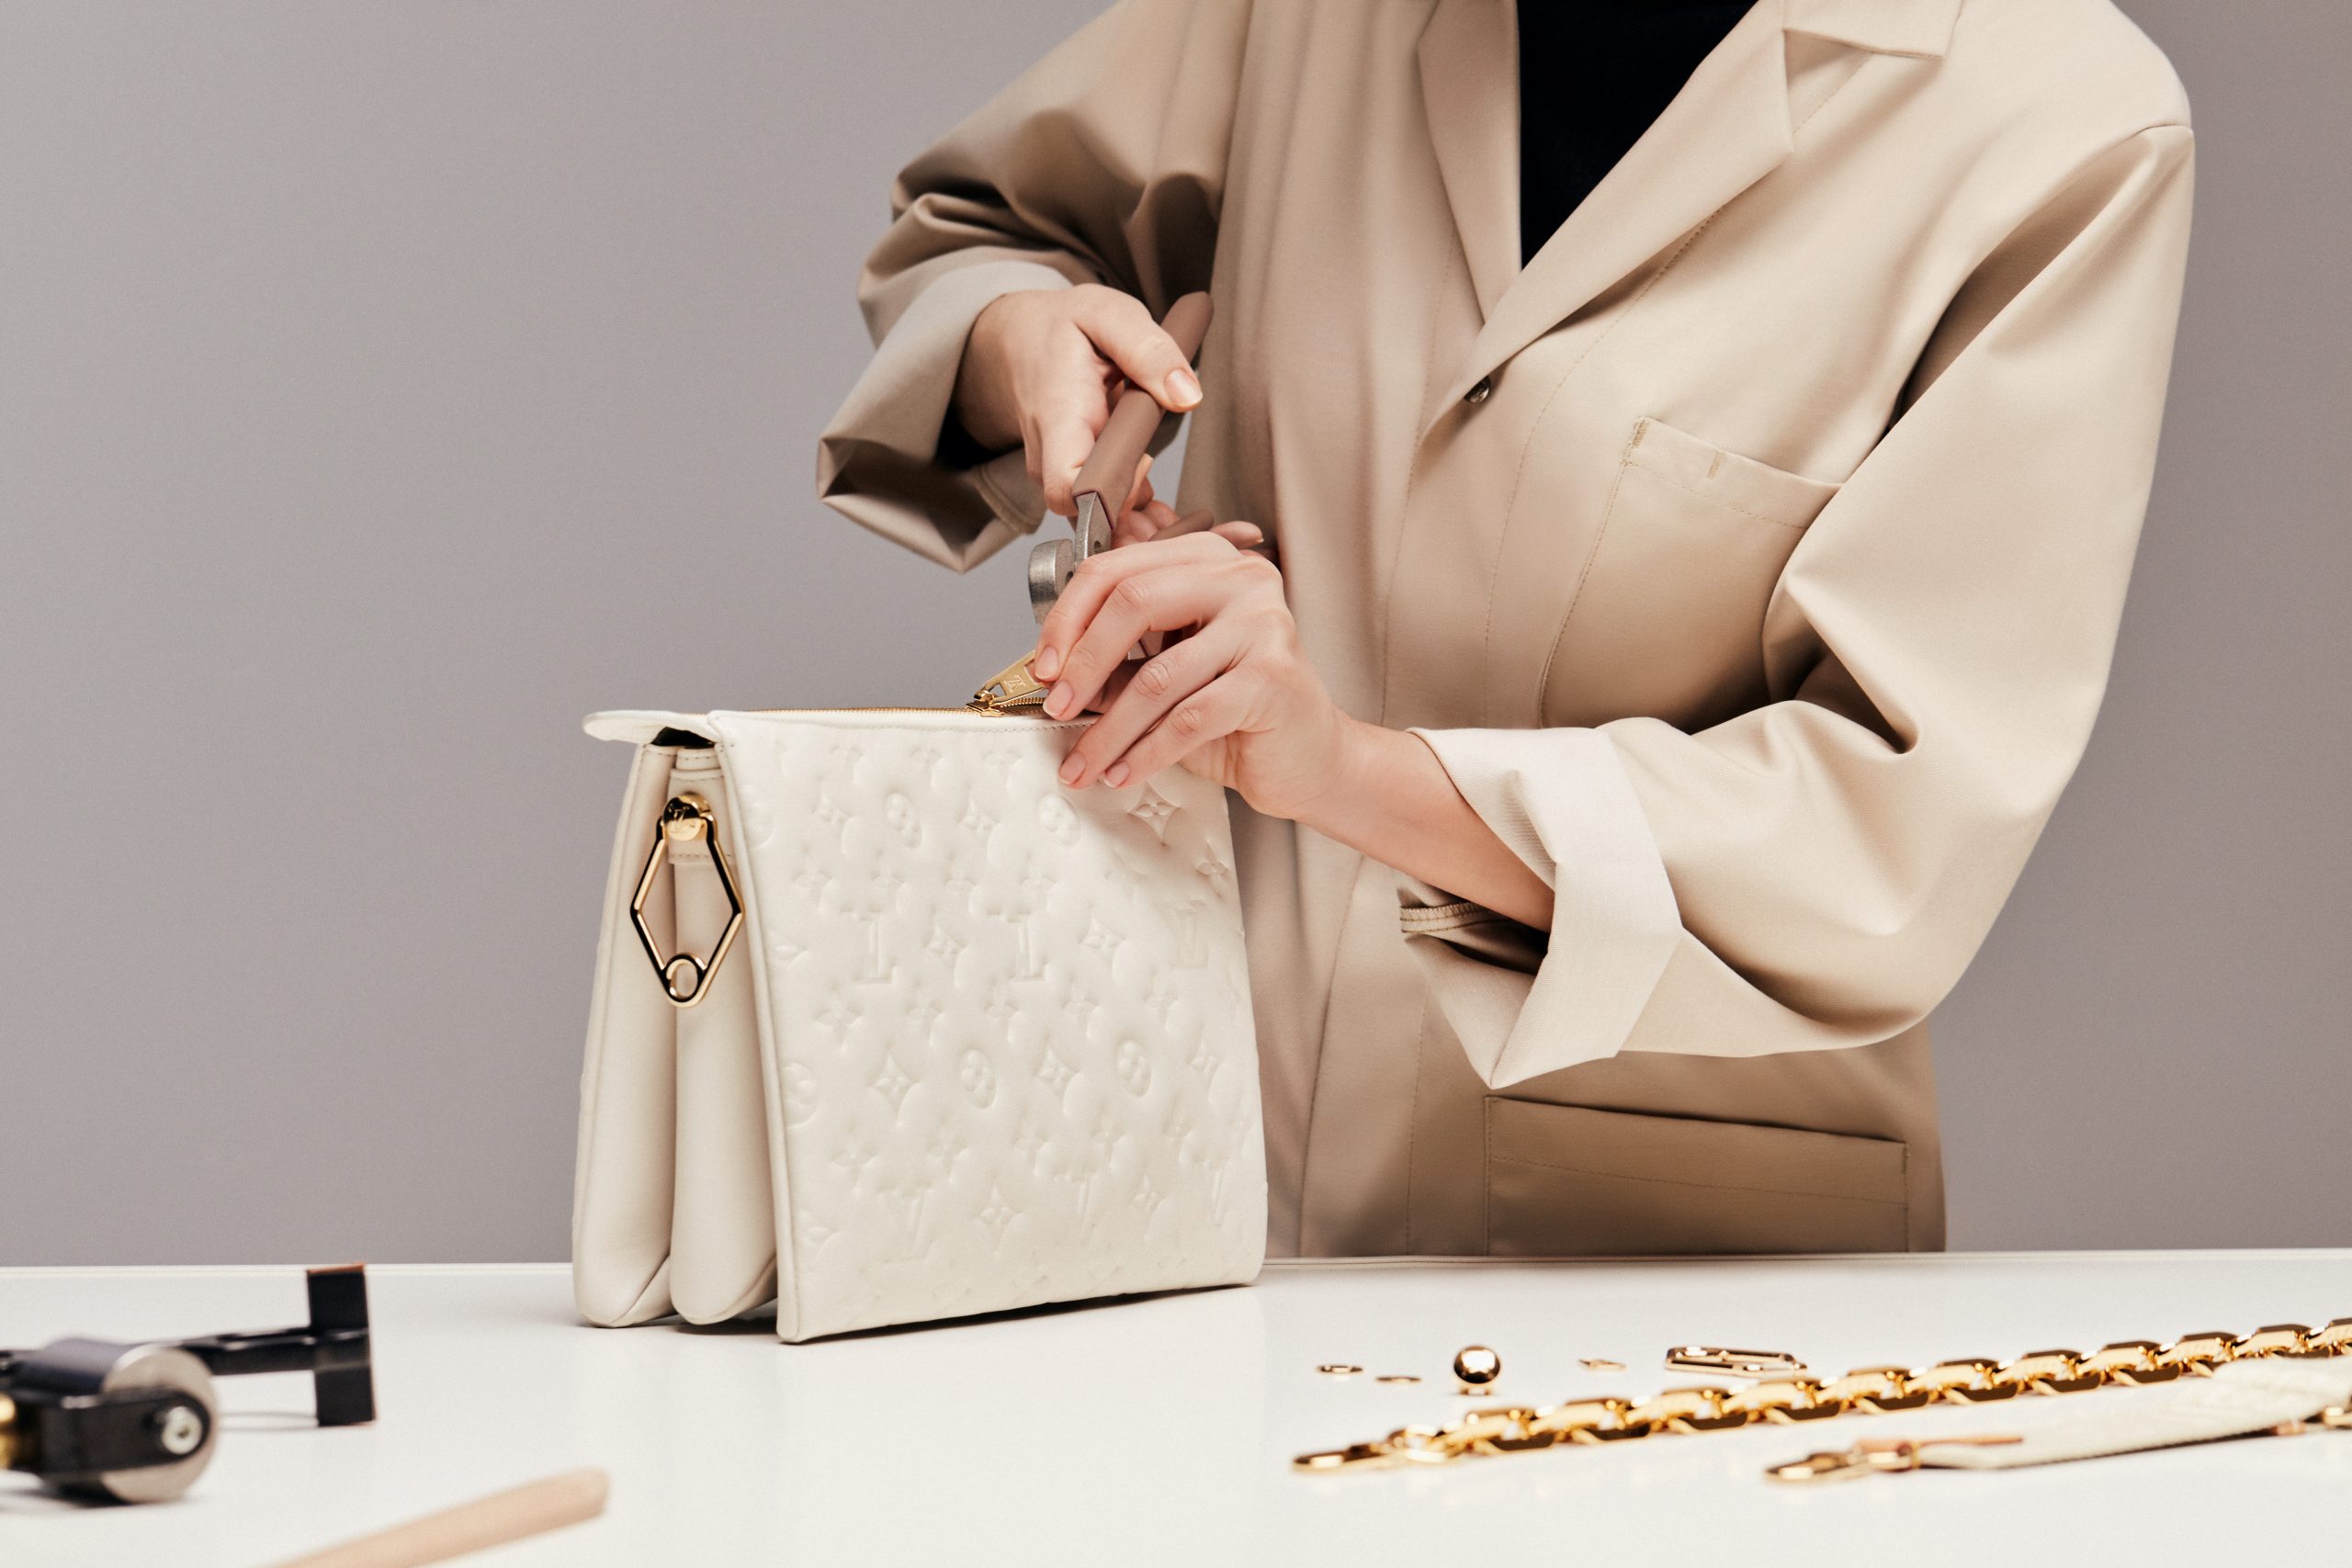 Louis Vuitton LV Coussin Bag Review